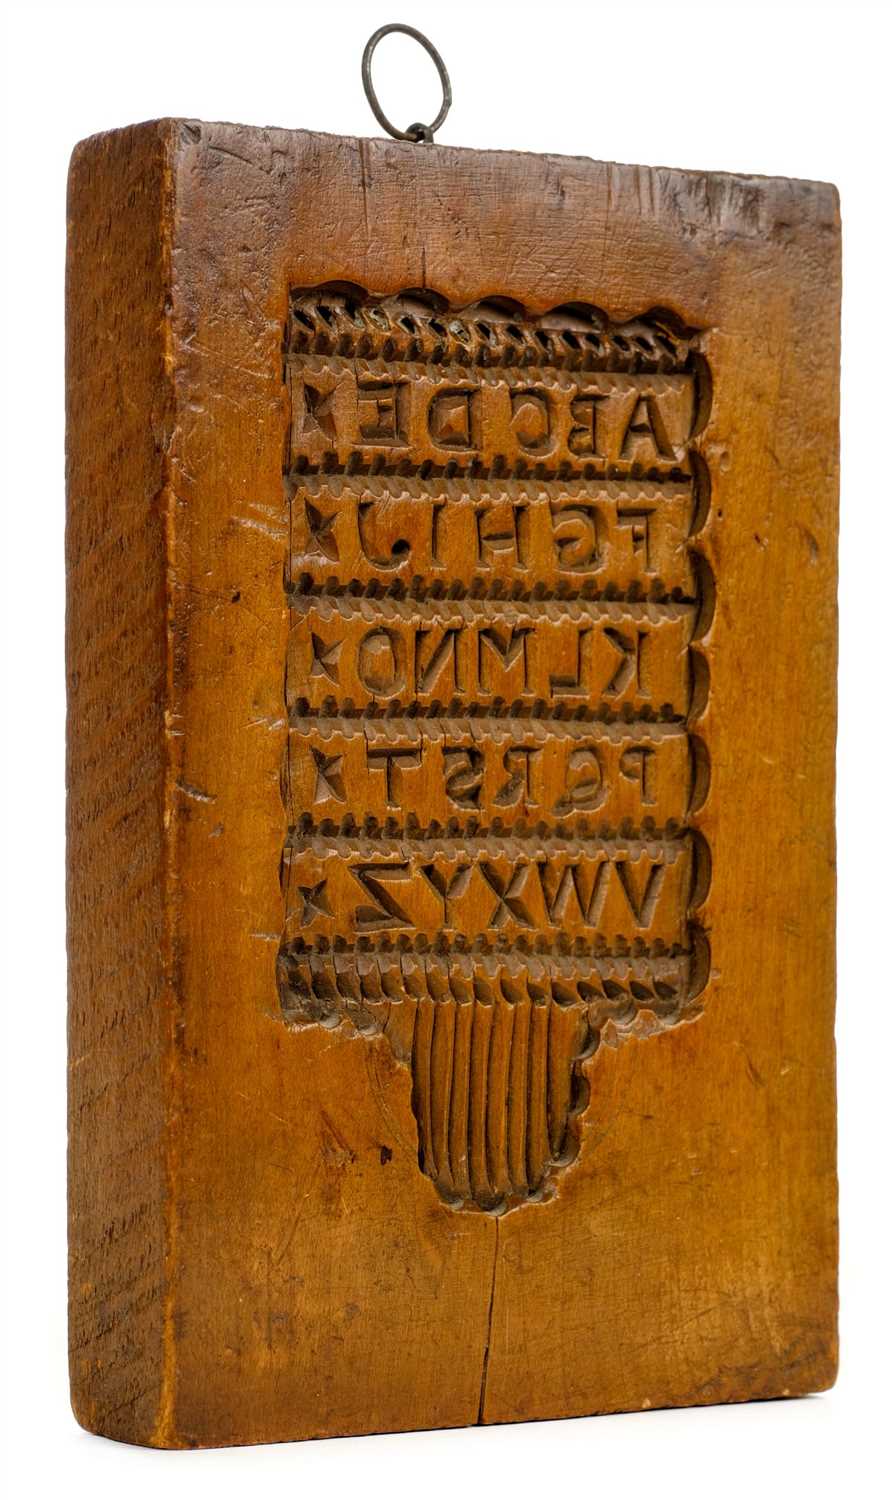 Lot 329 - Hornbook Mould. A wooden gingerbread hornbook mould, circa 1800